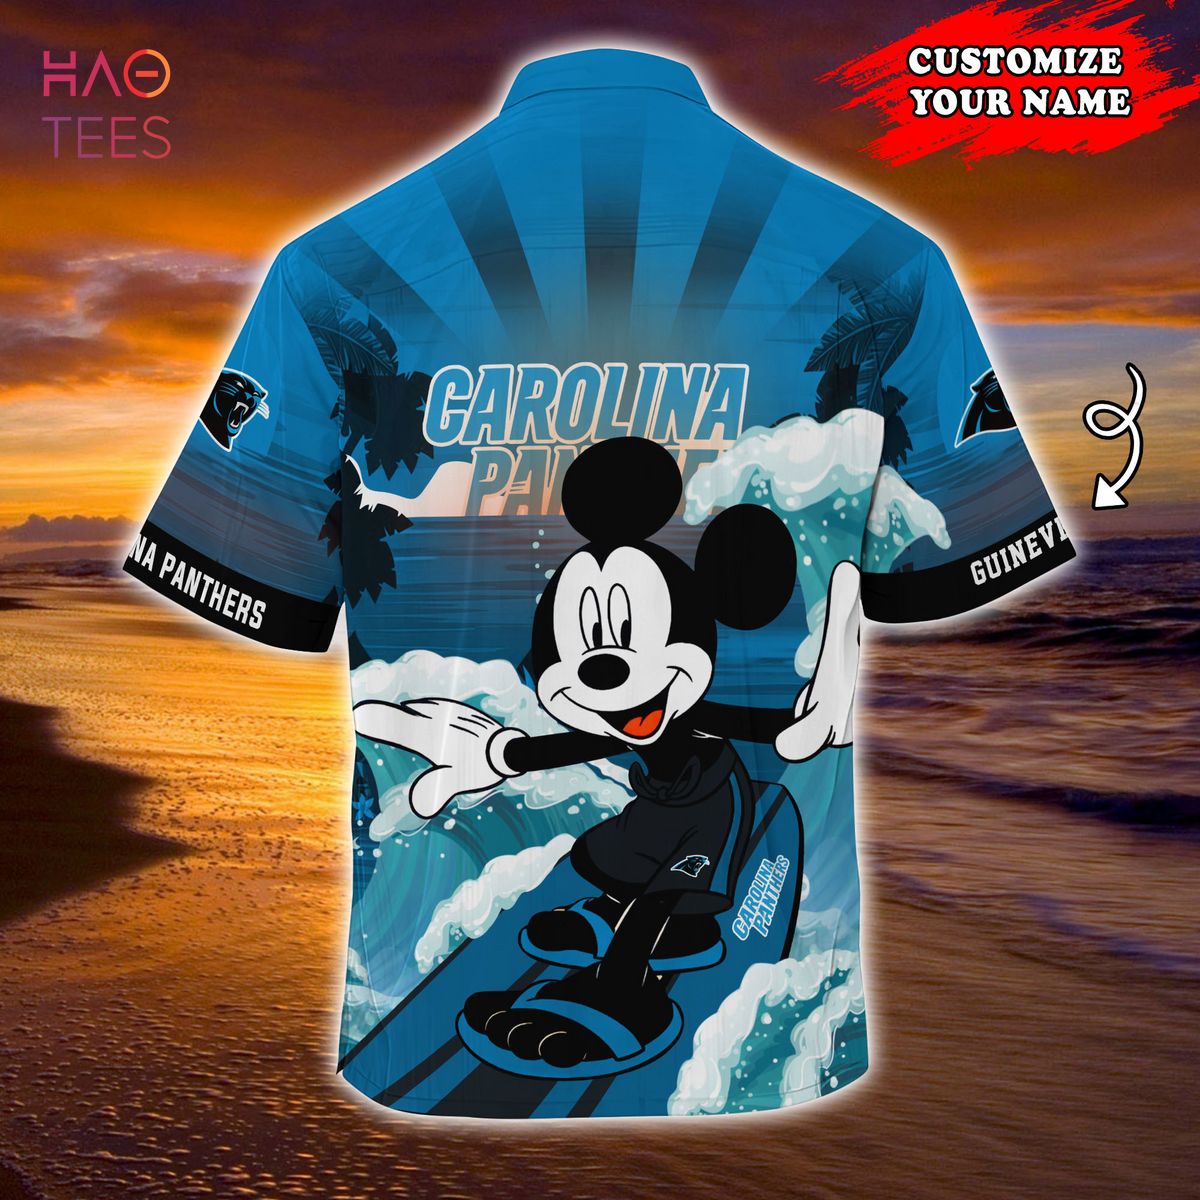 Carolina Panthers NFL Summer Customized Hawaiian Shirt